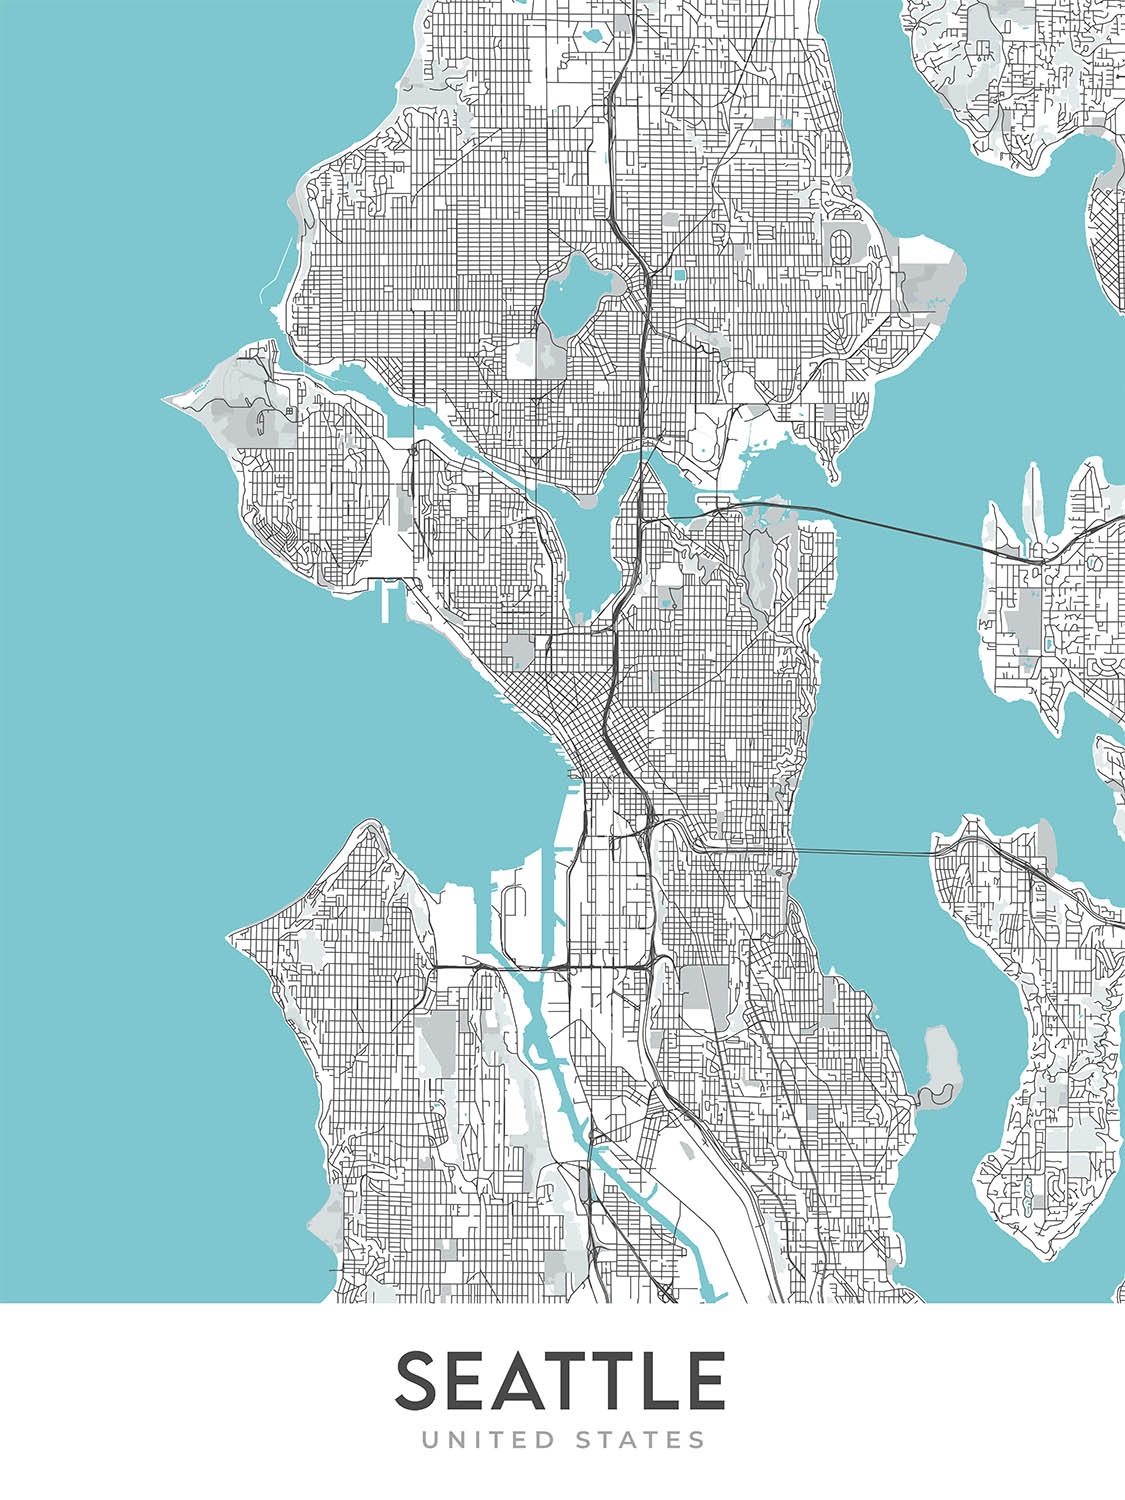 Moderner Stadtplan von Seattle, WA: Capitol Hill, Queen Anne, Belltown, Pike Place Market, Space Needle